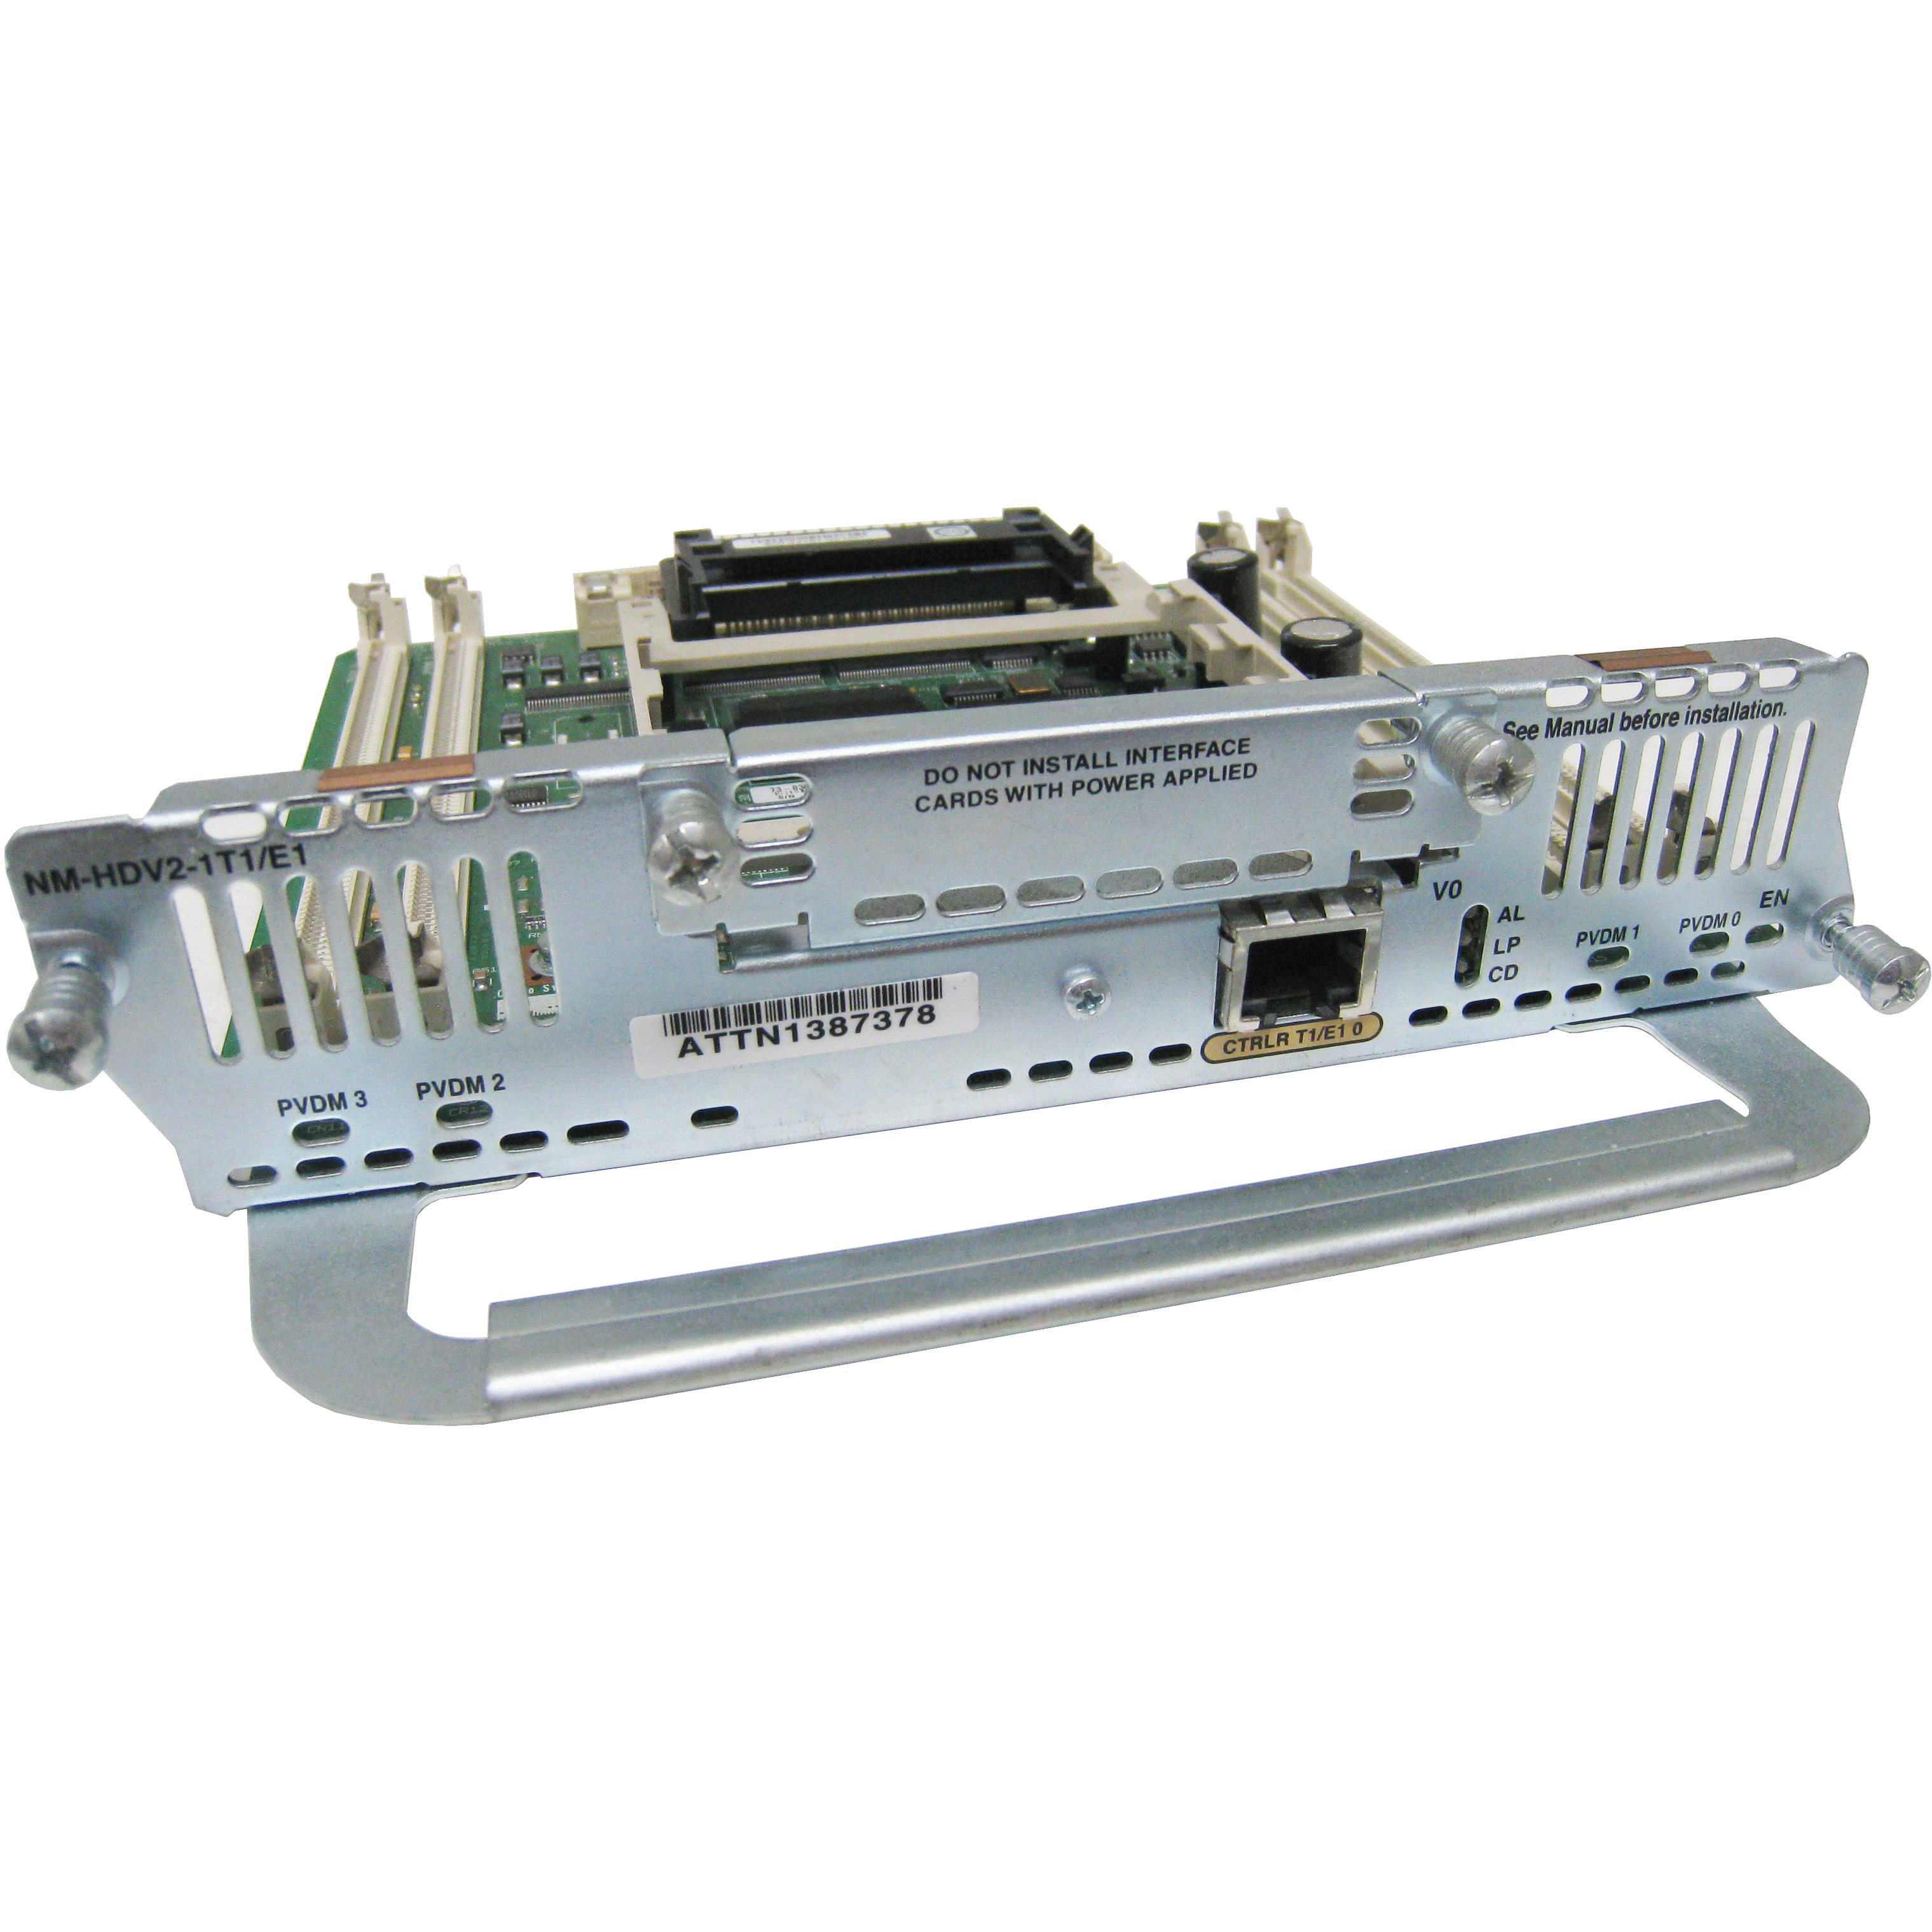 Cisco NM-HDV2-1T1/E1